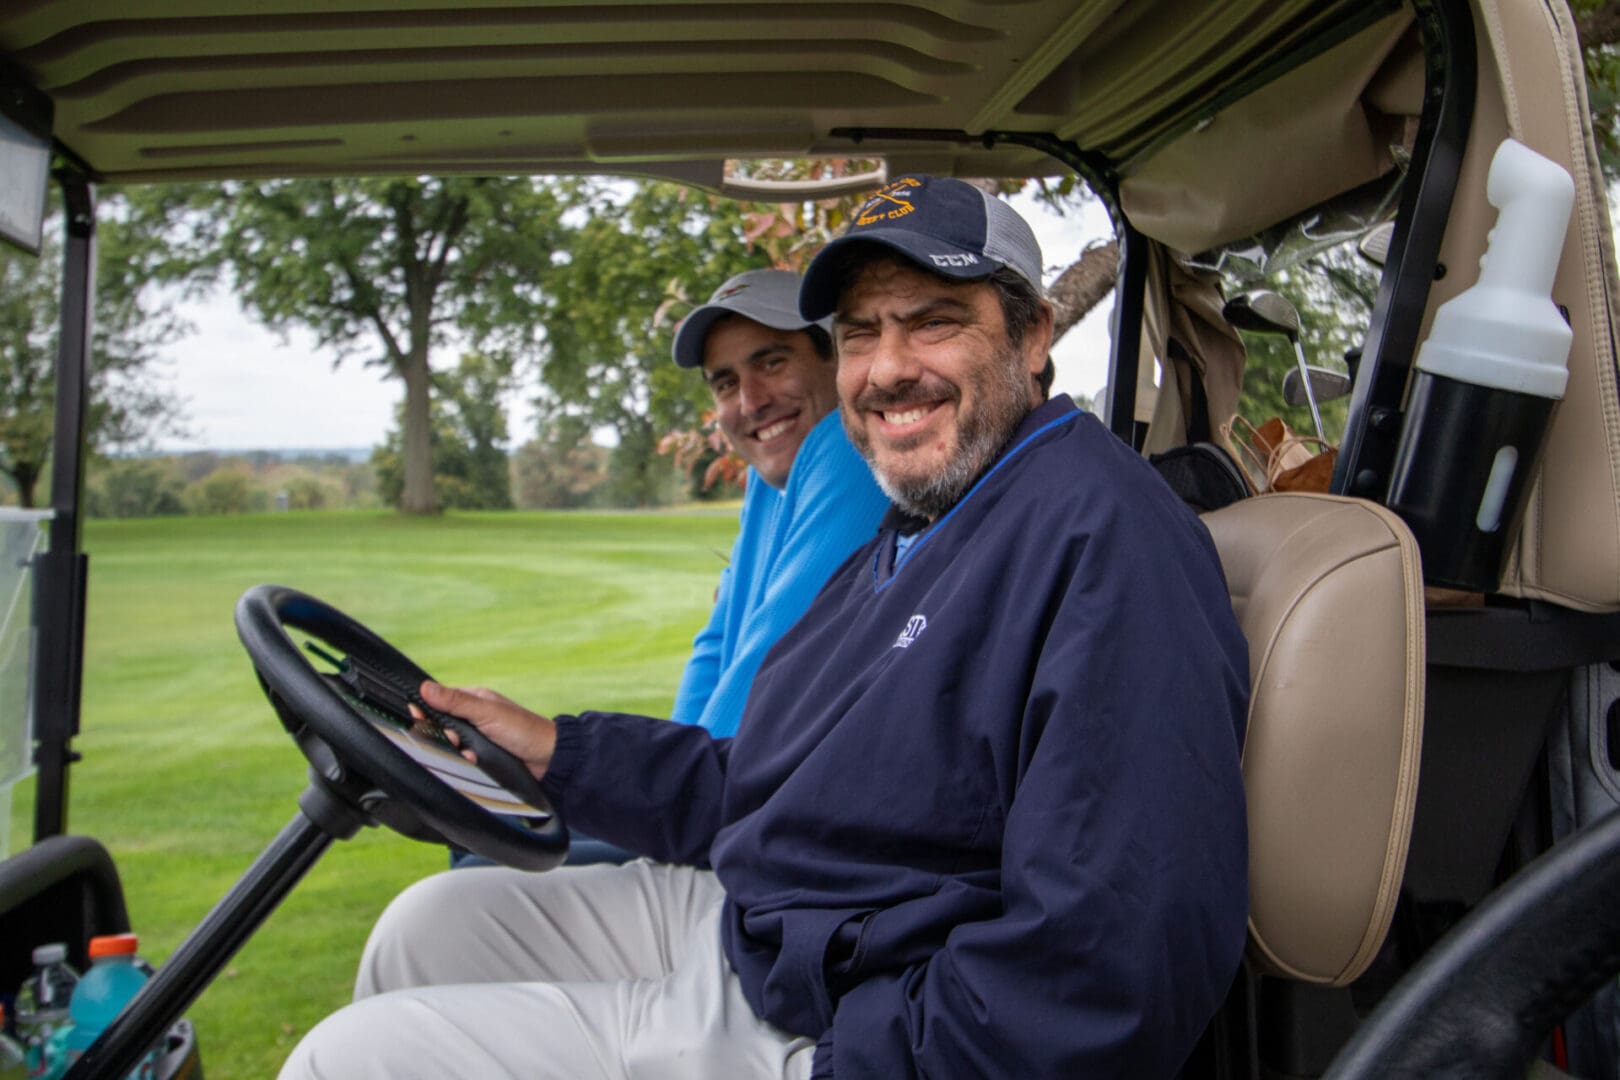 2 men on a golf cart